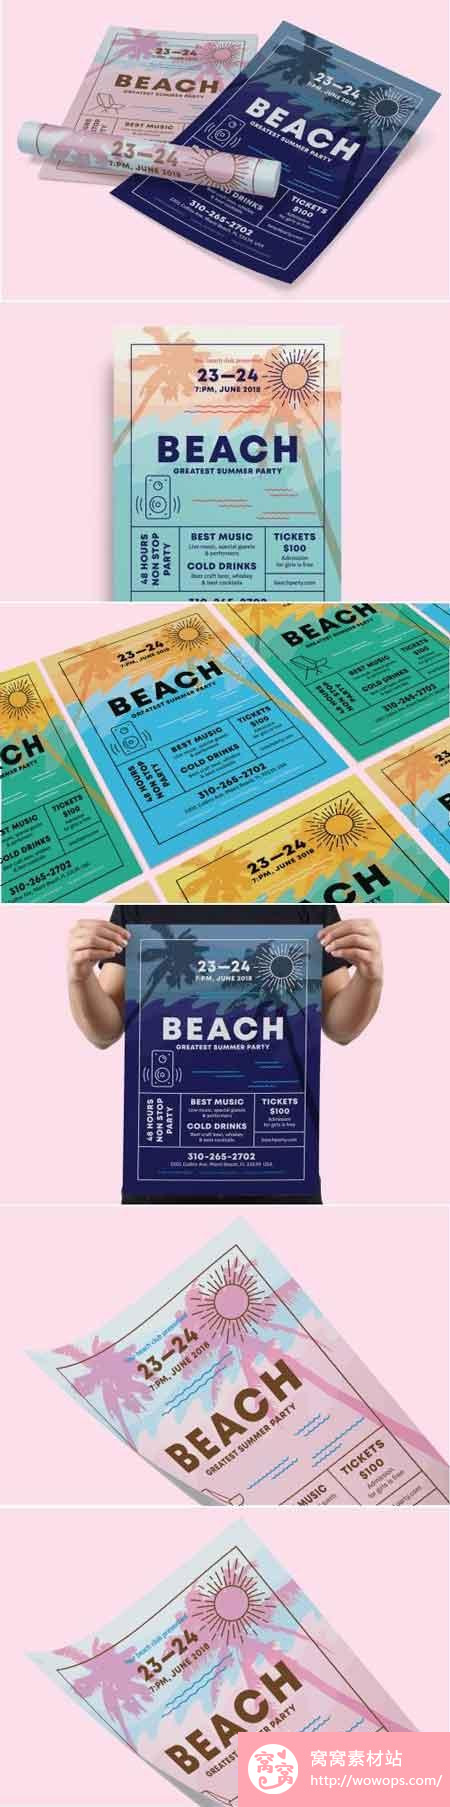 夏日沙滩度假海报模板psd素材下载1